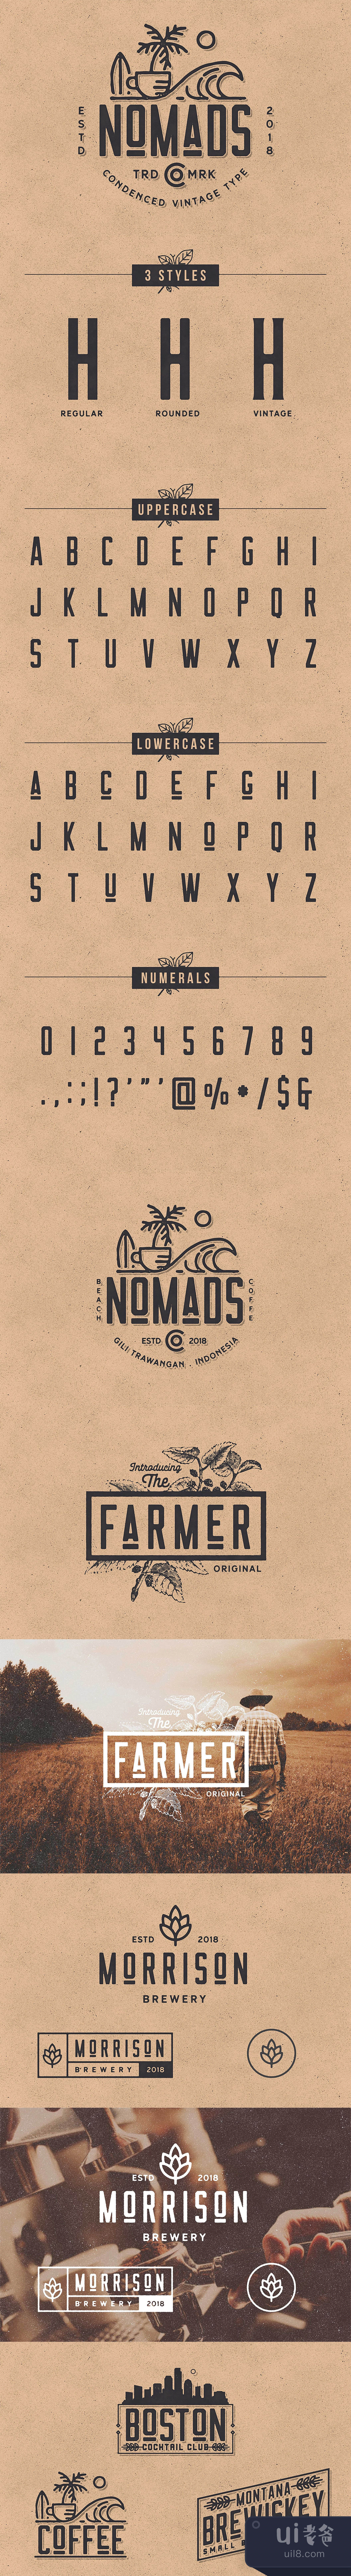 游牧民族原创字体 (Nomads Original Typeface)插图